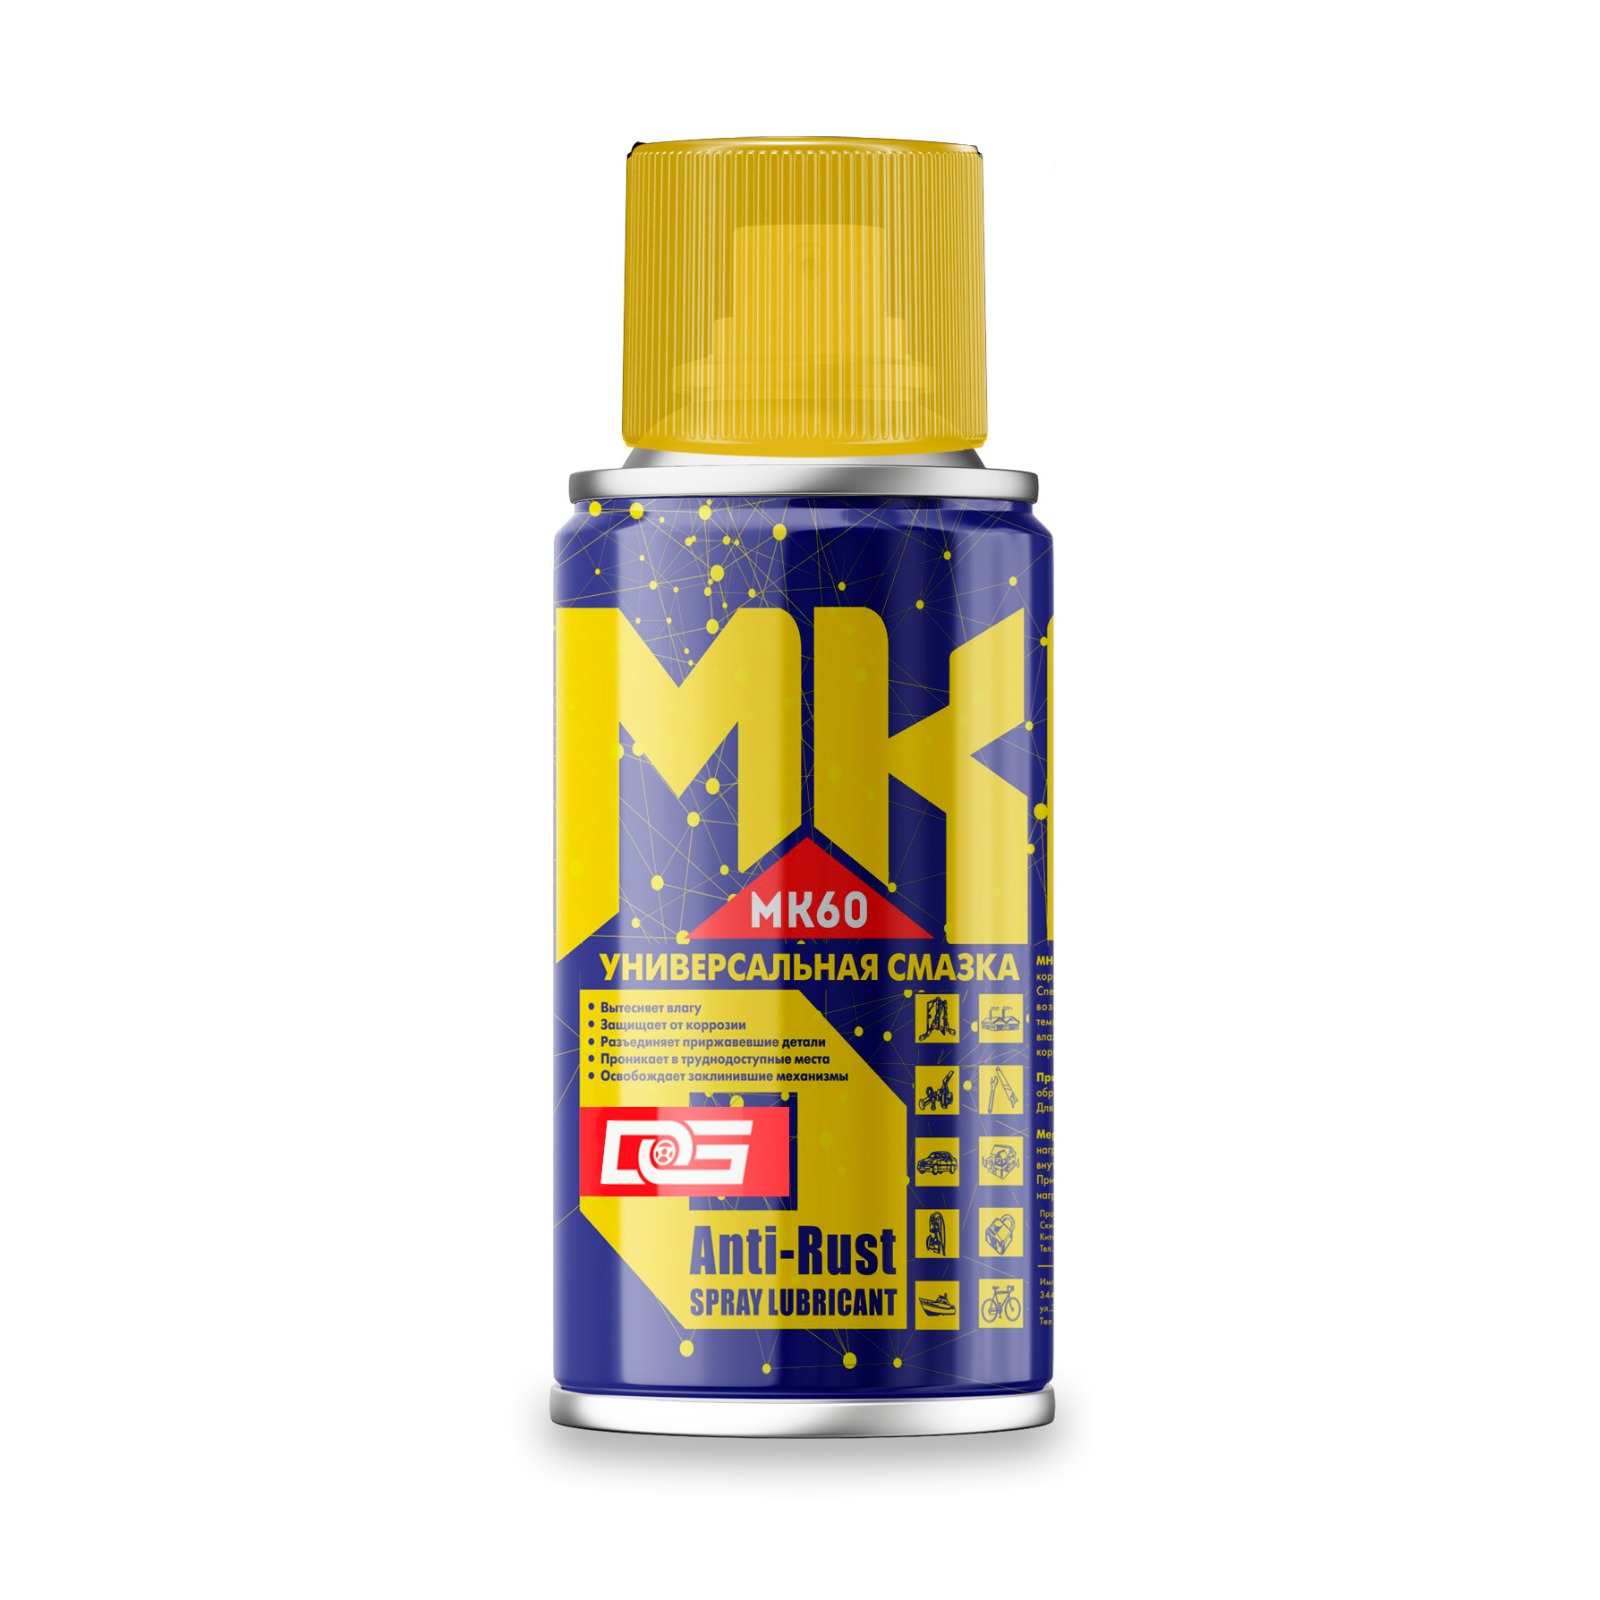 Многофункциональная проникающая смазка Kimi MK60-100 аэрозольный баллон объем 100 мл